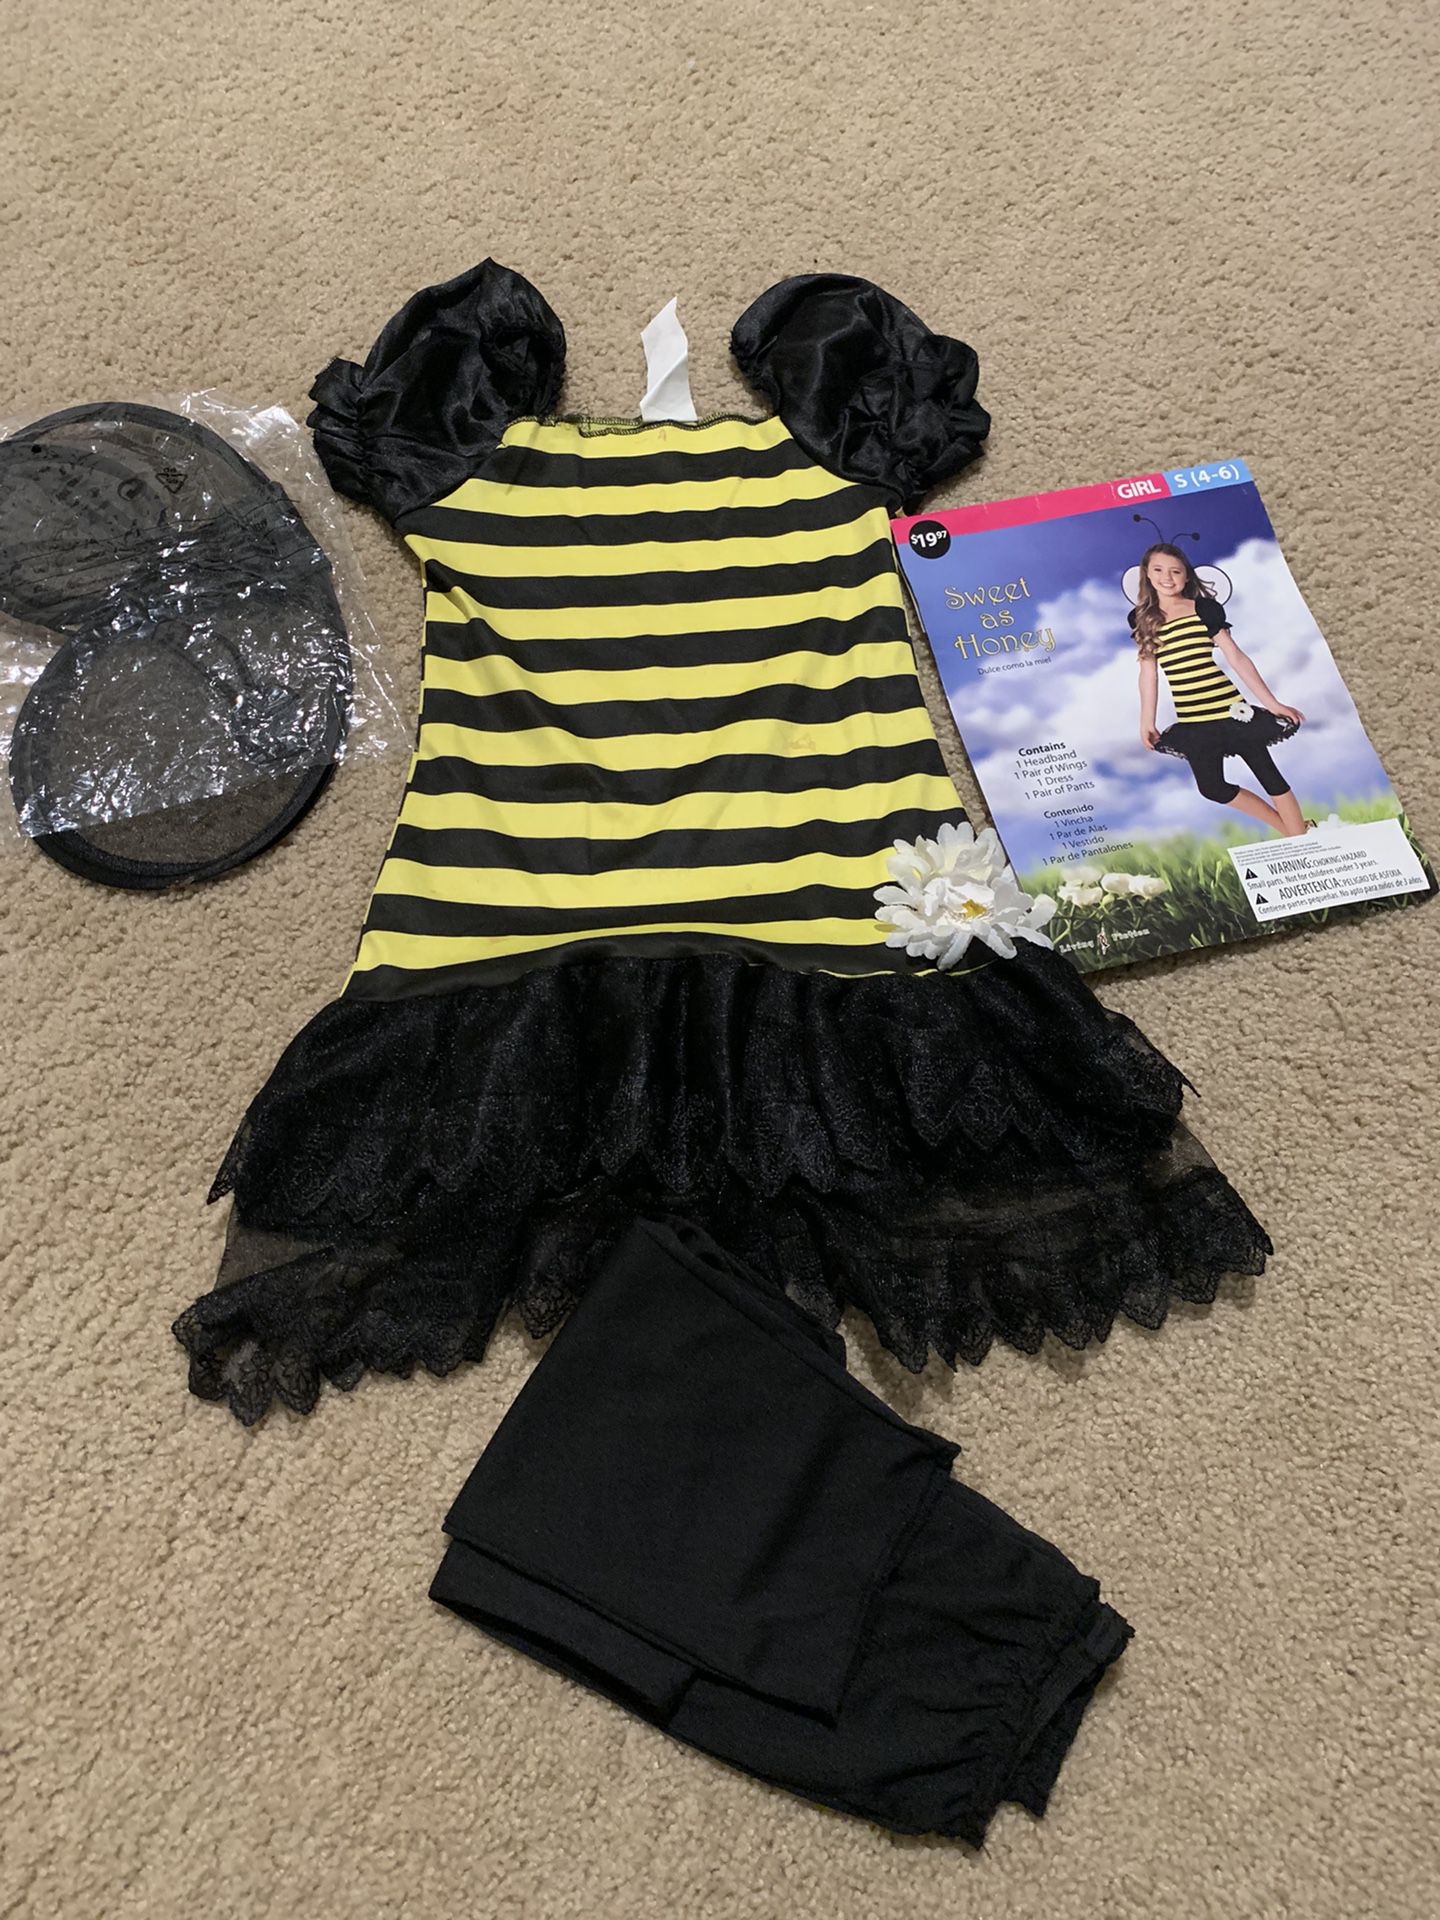 Honey Bee Halloween Costume - 10$